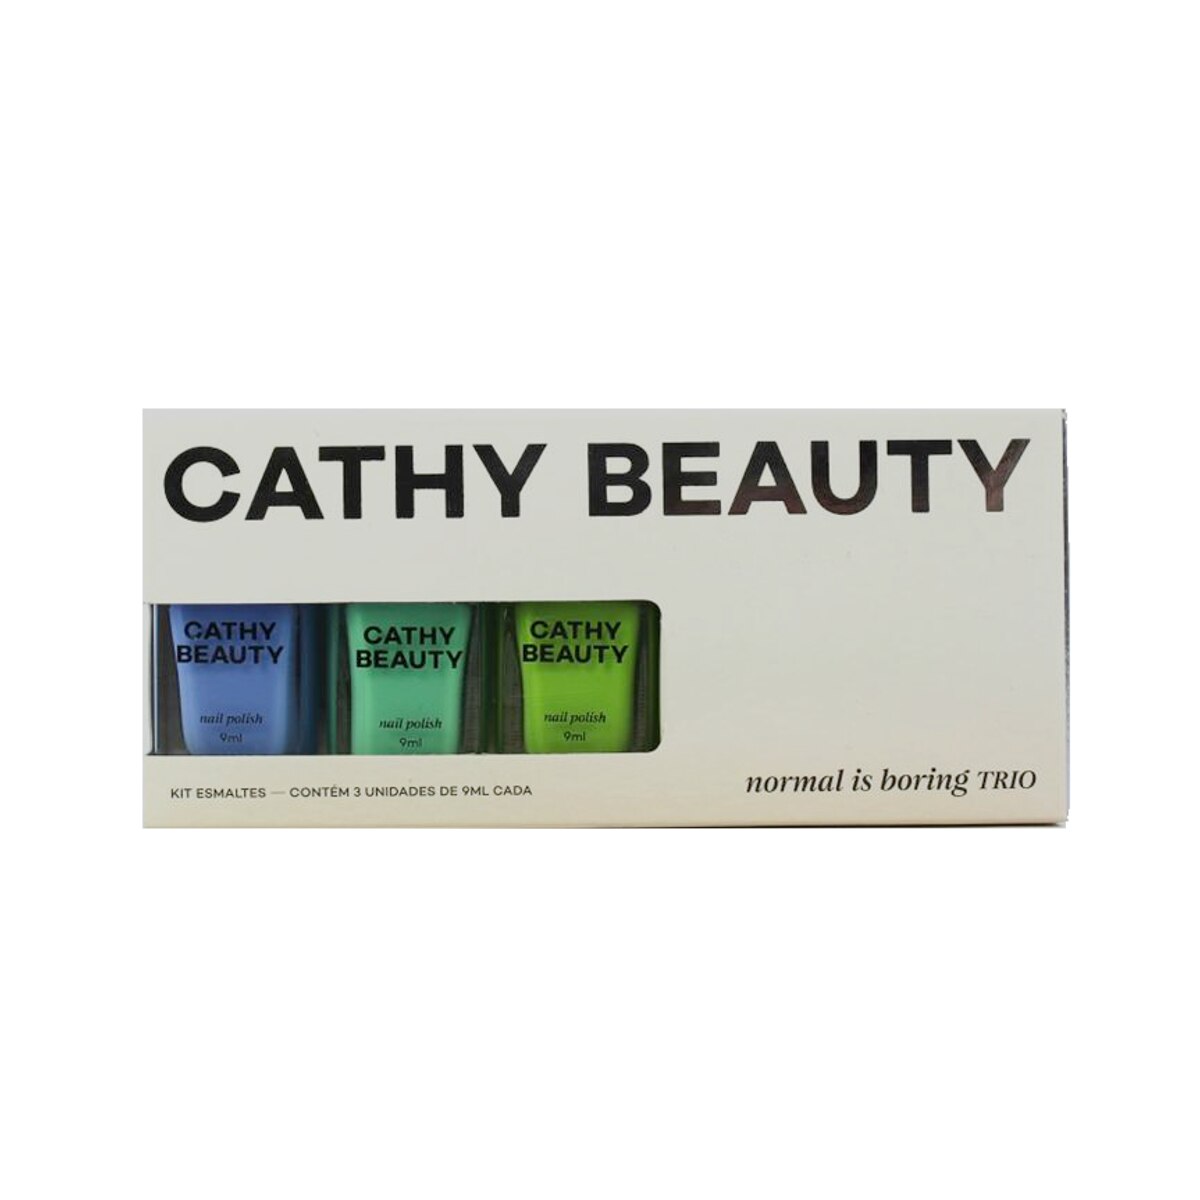 Kit de Esmalte Cathy Beauty Normal is Boring 3 Unidade de 9ml